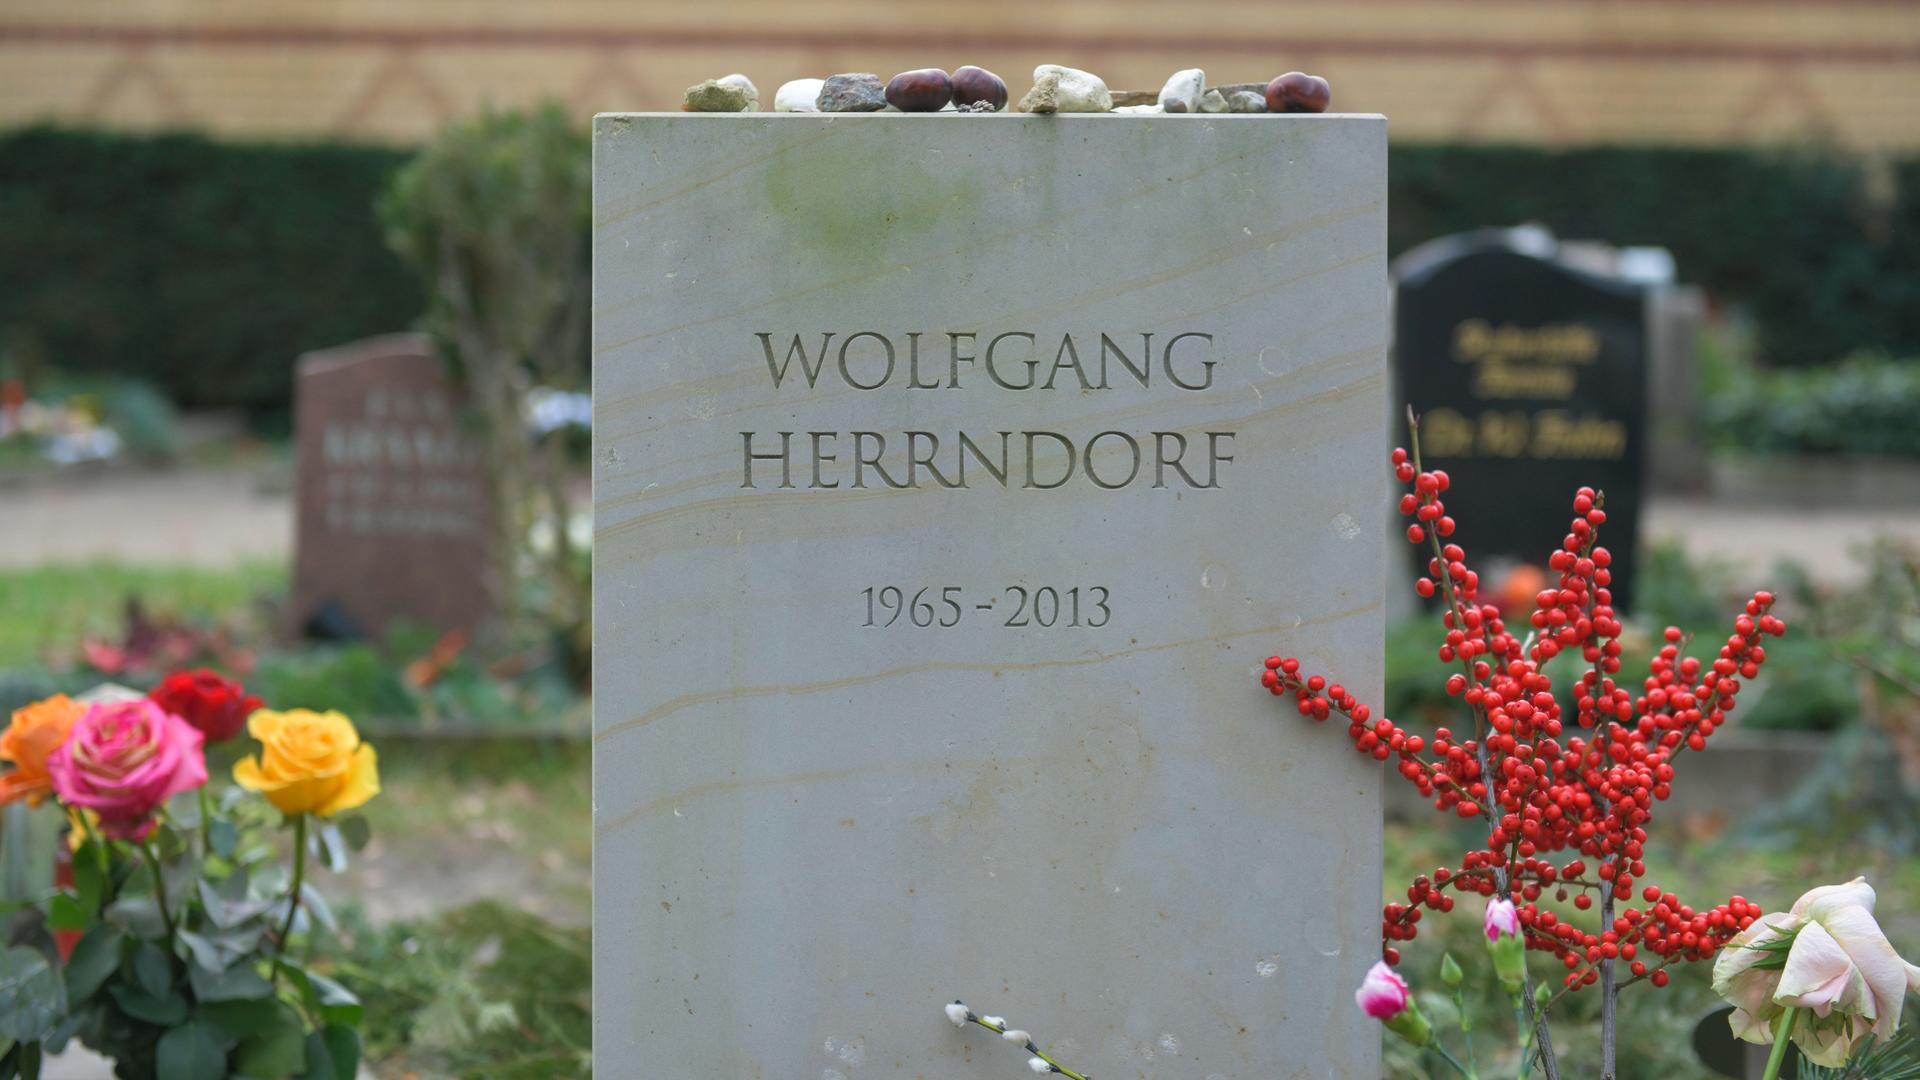 Grabstein mit der Inschrift "Wolfgang Herrndorf"und den Lebensdaten "1965 - 2013".